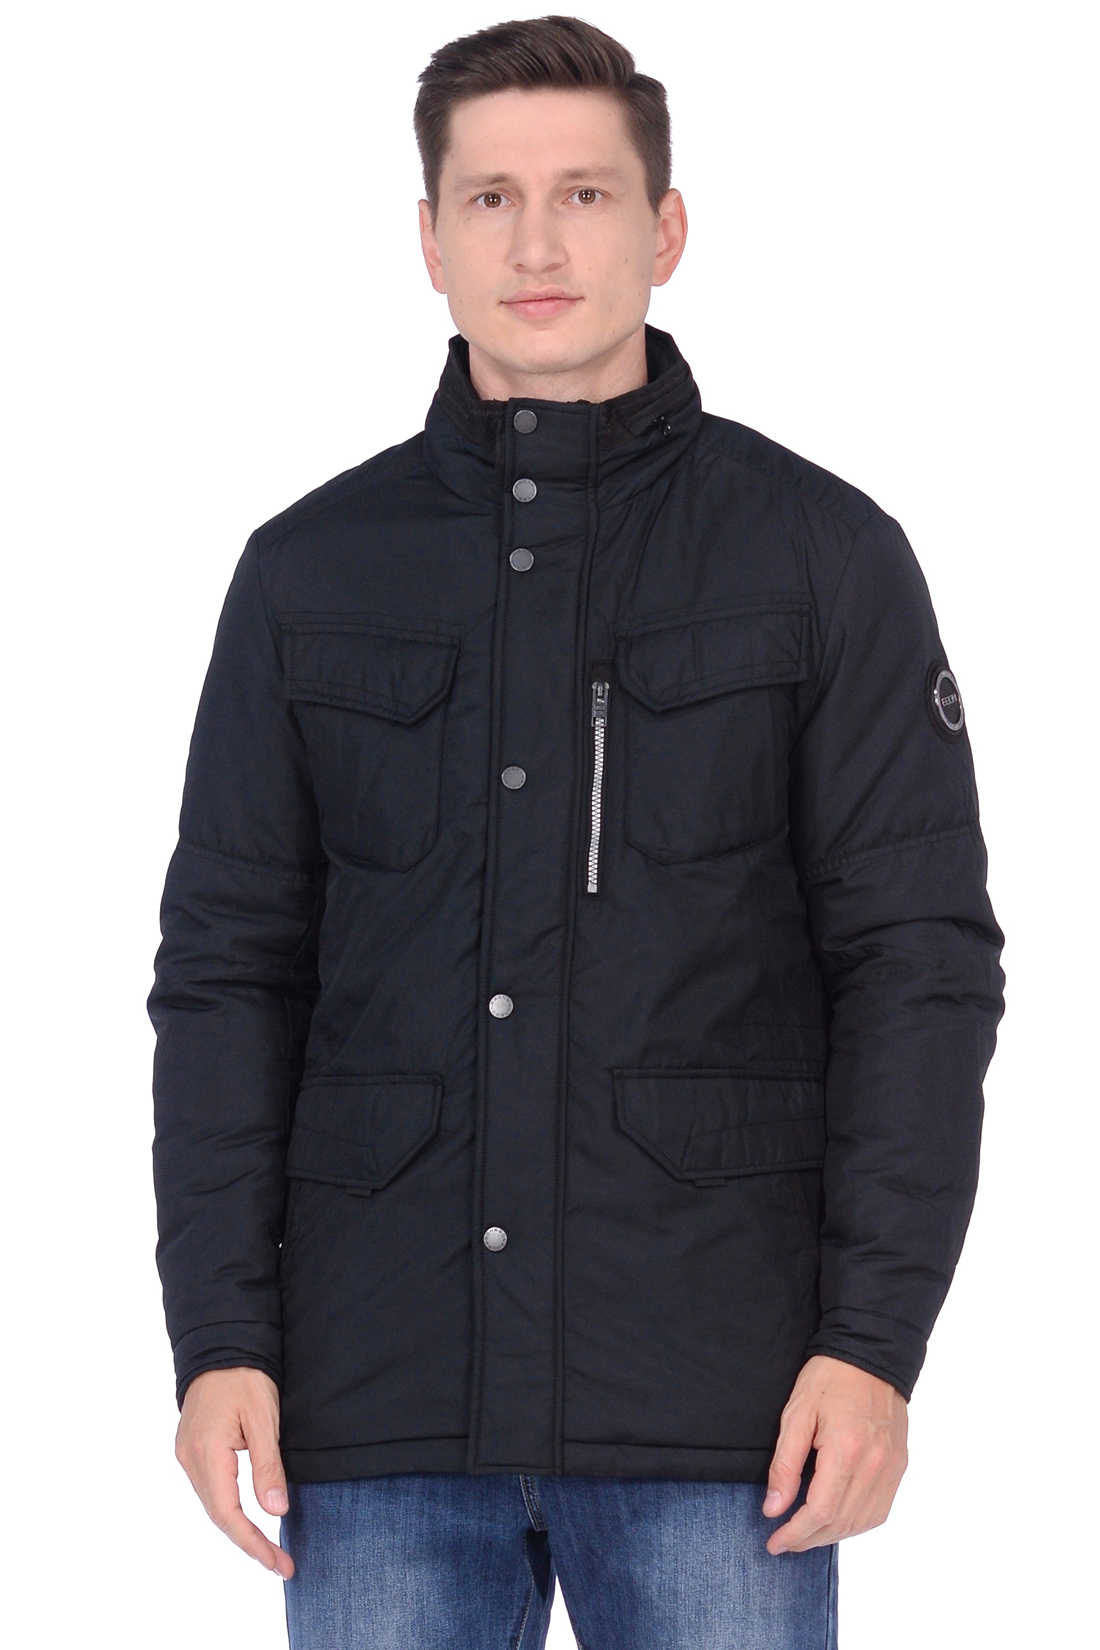 Куртка эргономичного кроя (арт. baon B538513), размер 3XL, цвет черный Куртка эргономичного кроя (арт. baon B538513) - фото 1